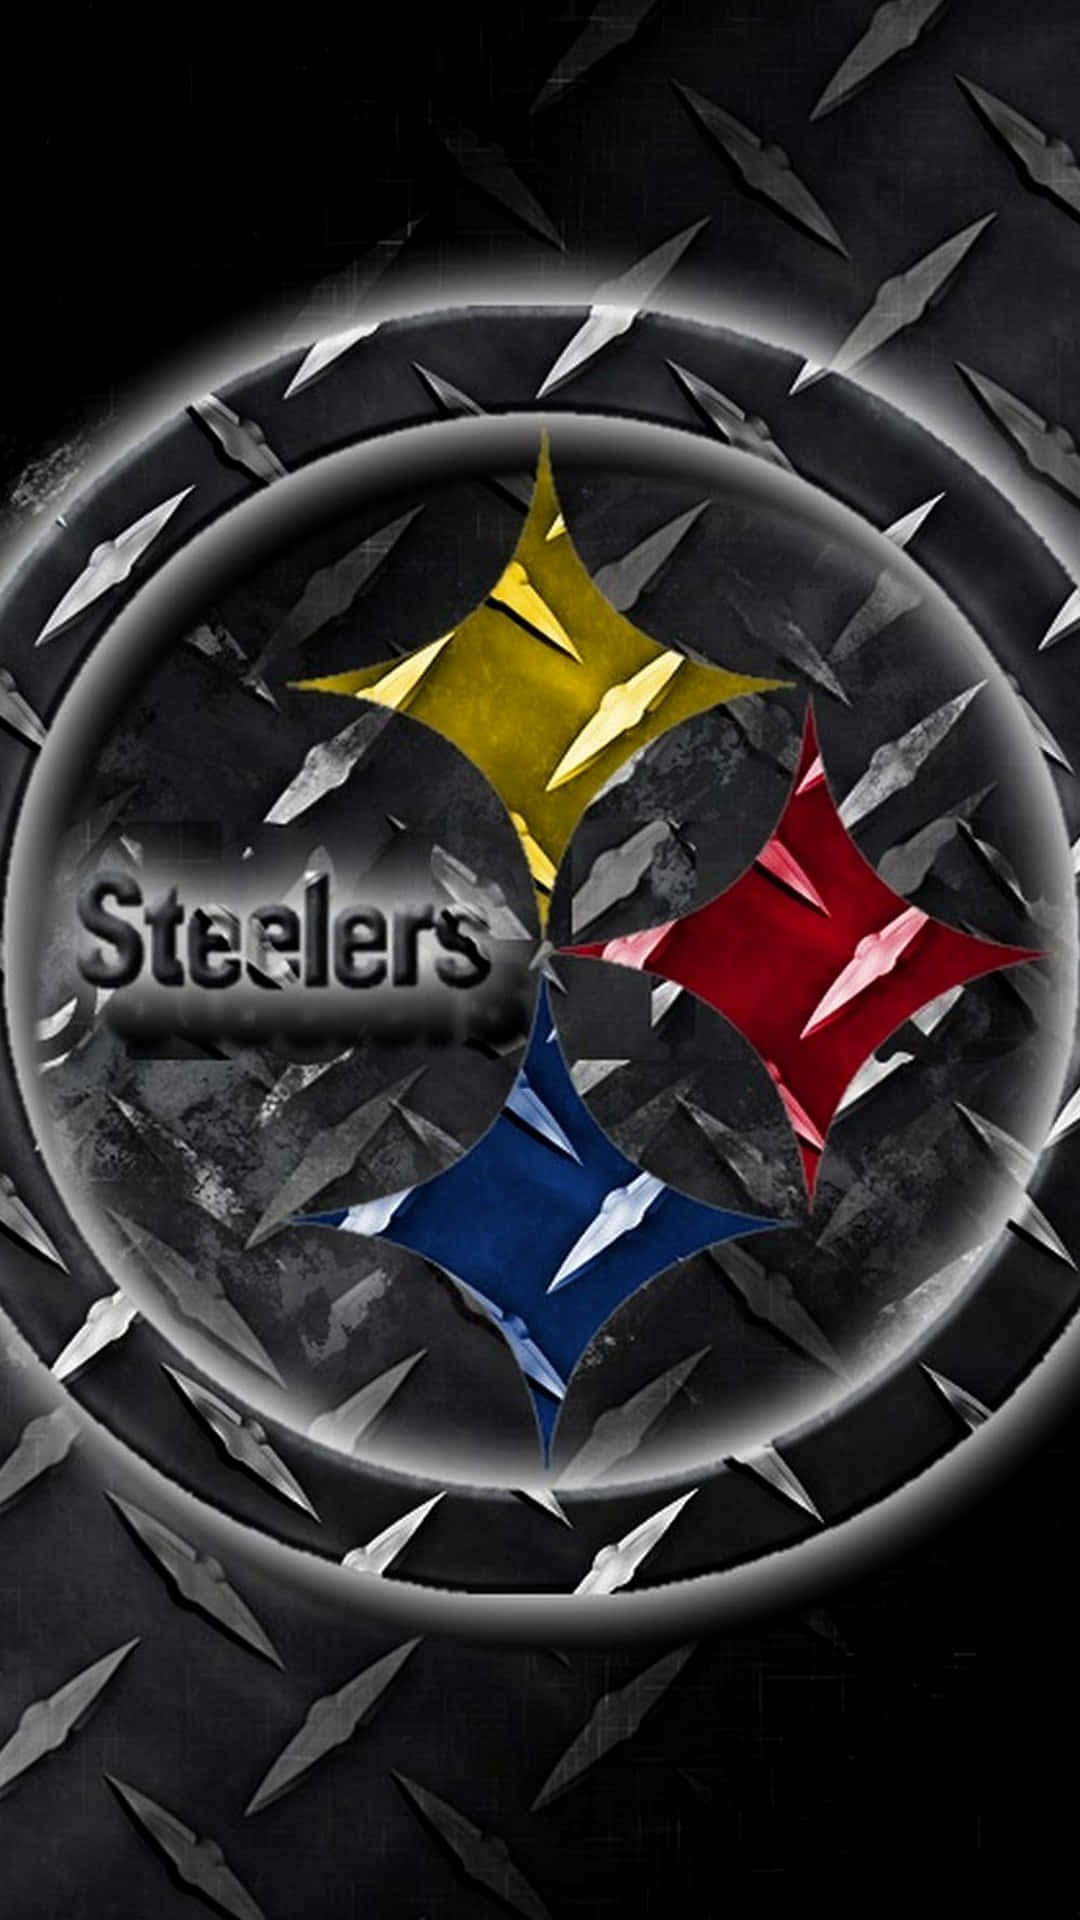 En iPhone med farver og logo fra Pittsburgh Steelers fodboldhold Wallpaper